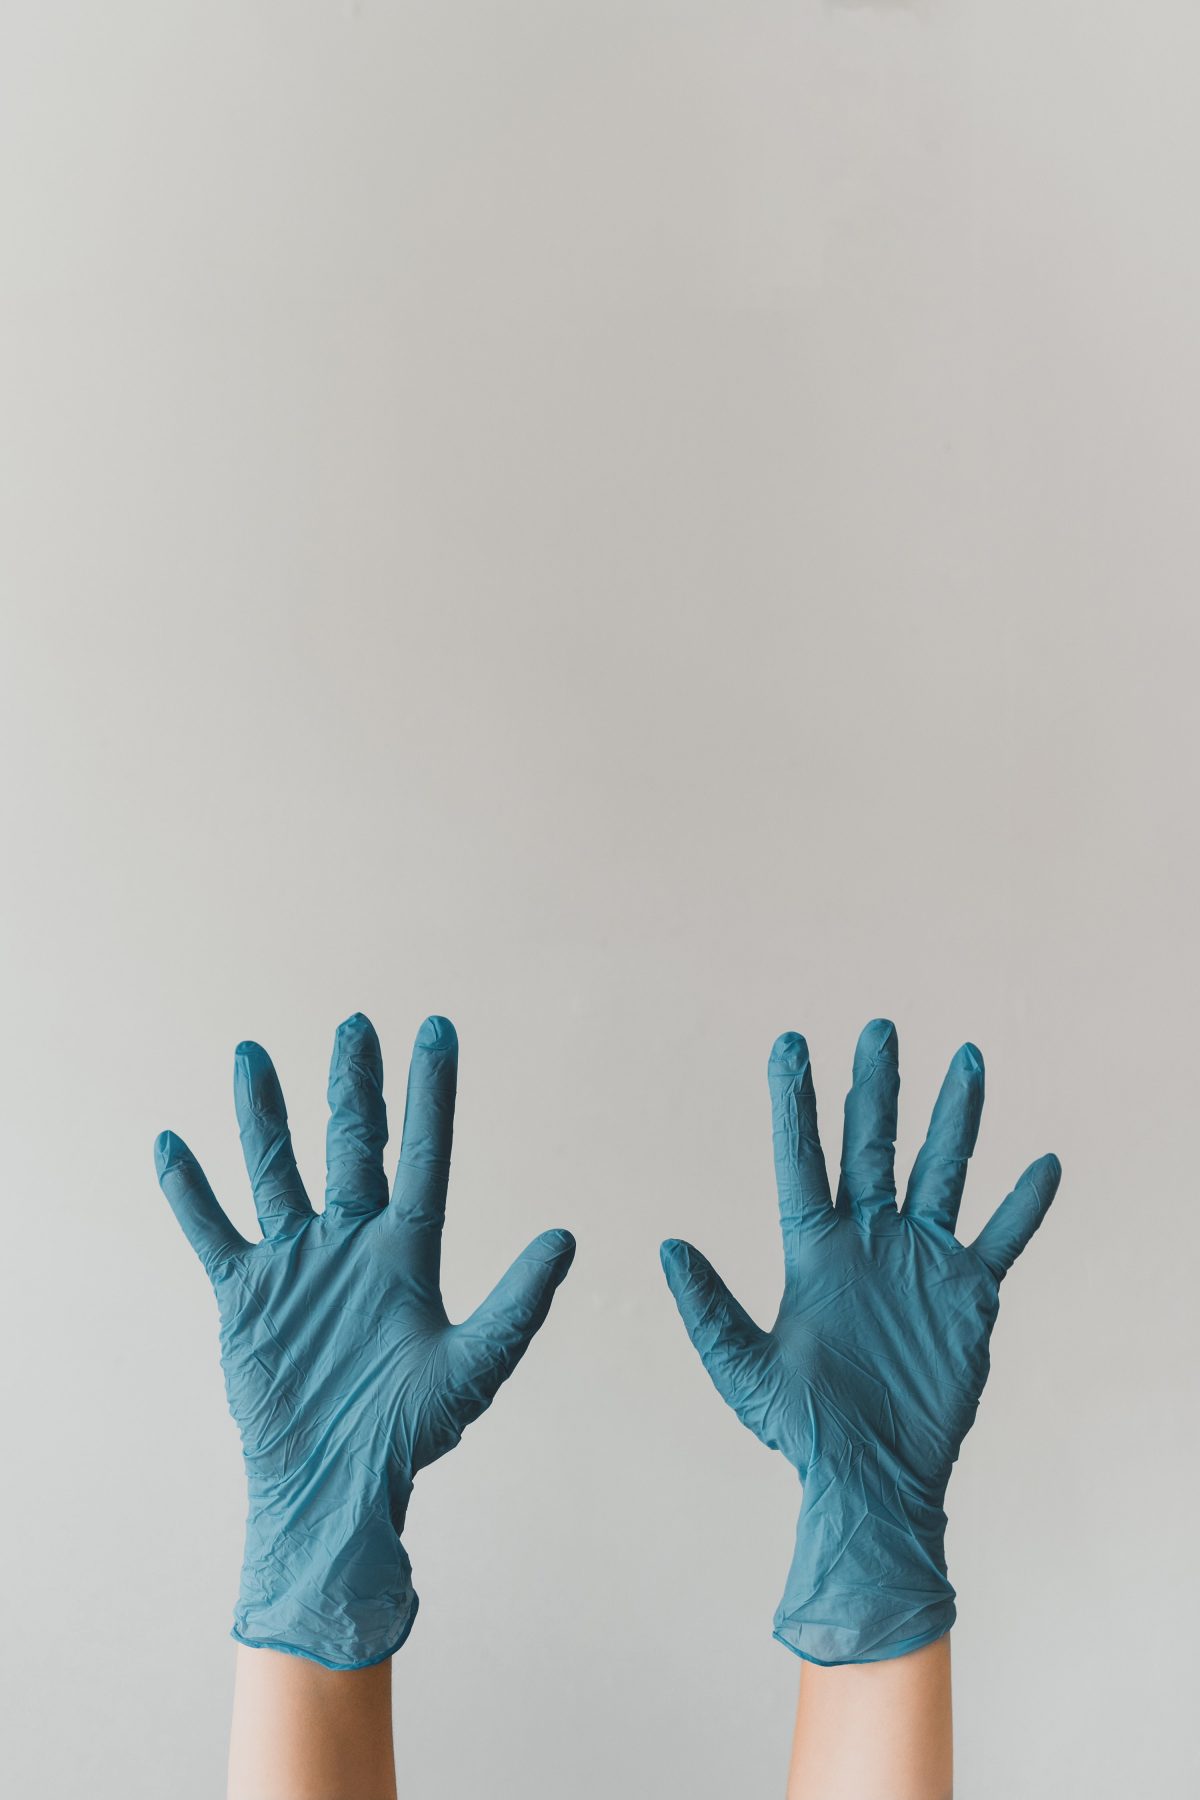 Sanitary Gloves